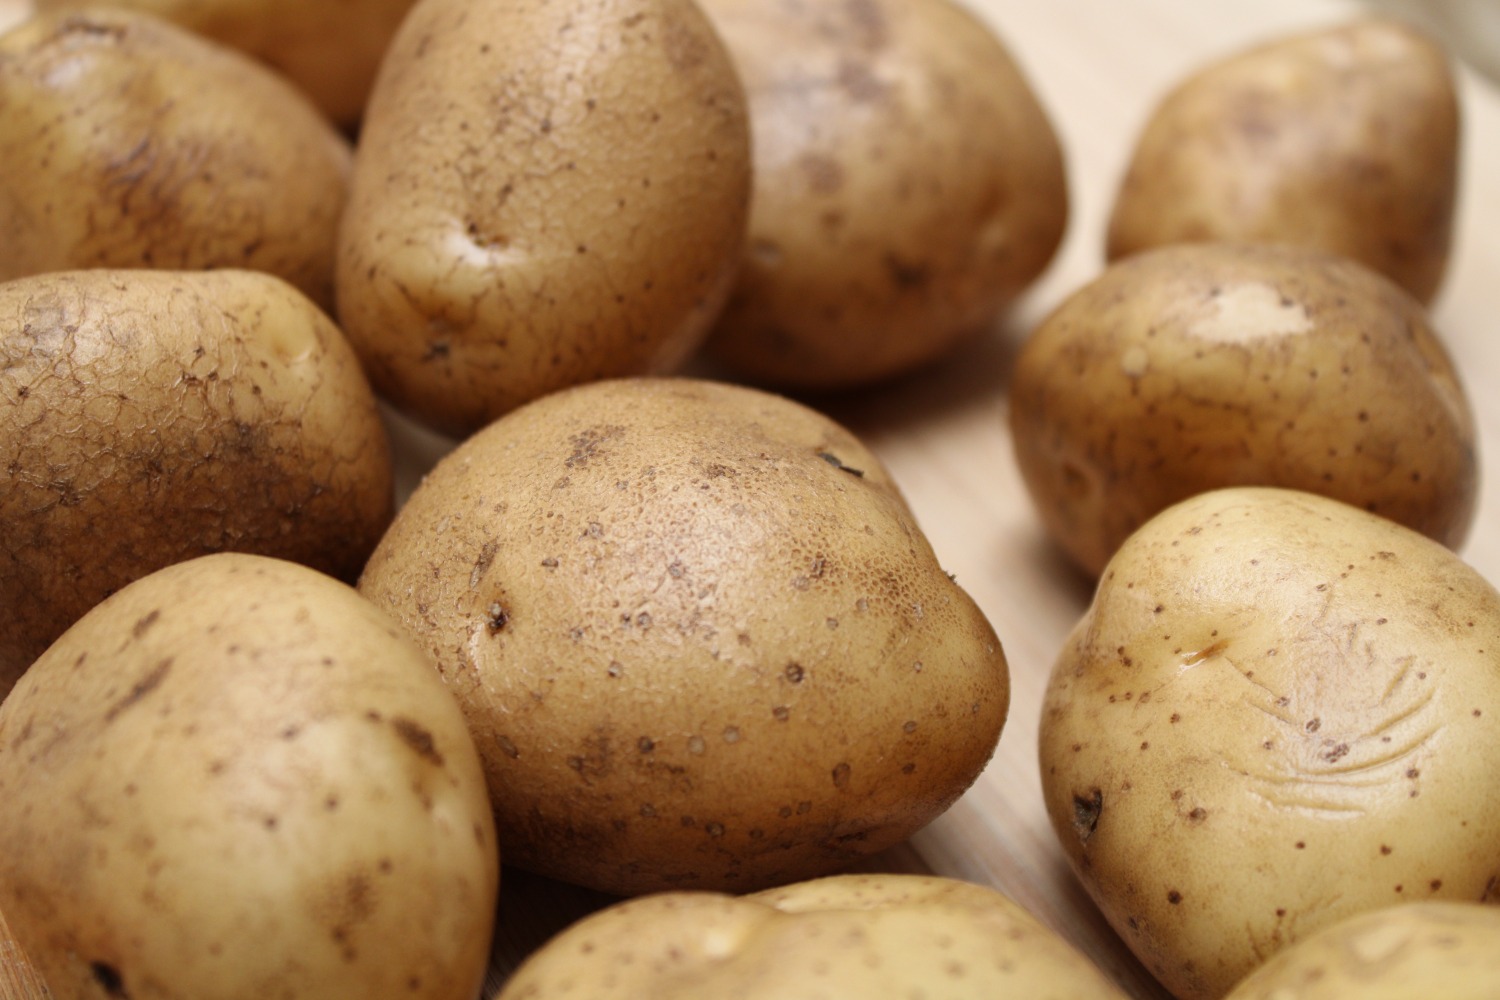 Aardappel lifehacks: zo wordt stamppot maken leuker én makkelijker